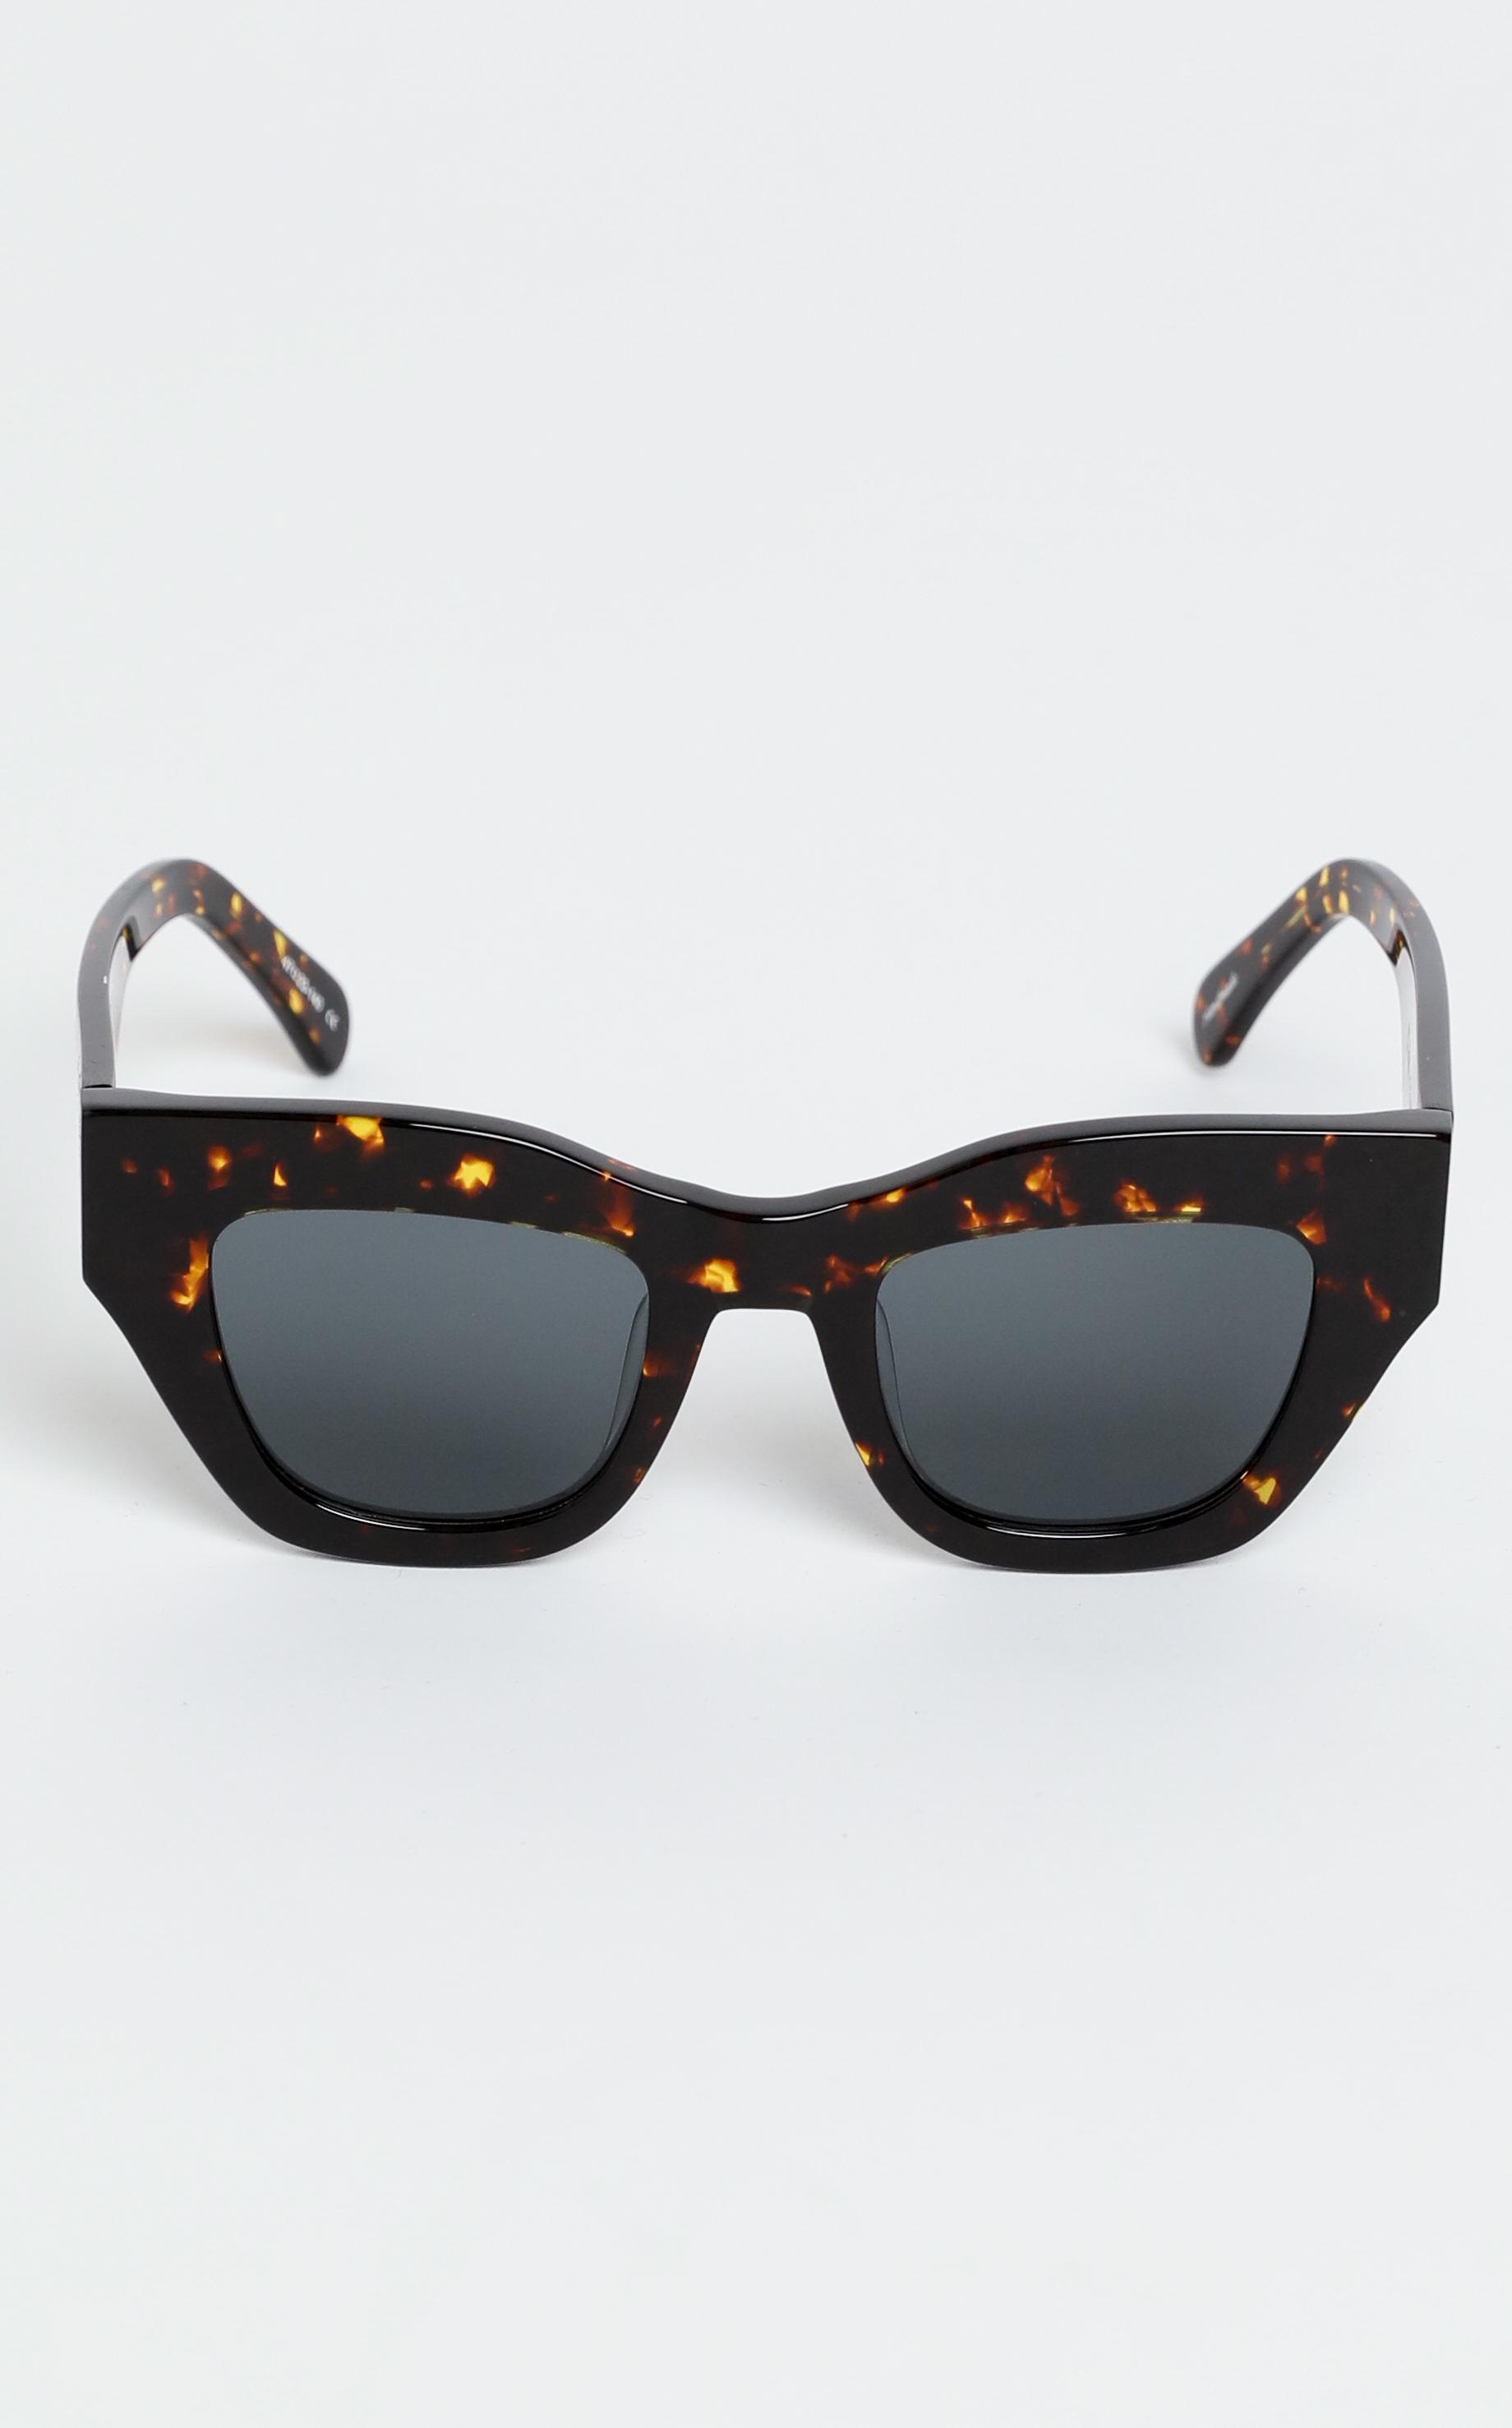 Oscar & Frank - Haarlem Sunglasses in Dark Tort | Showpo